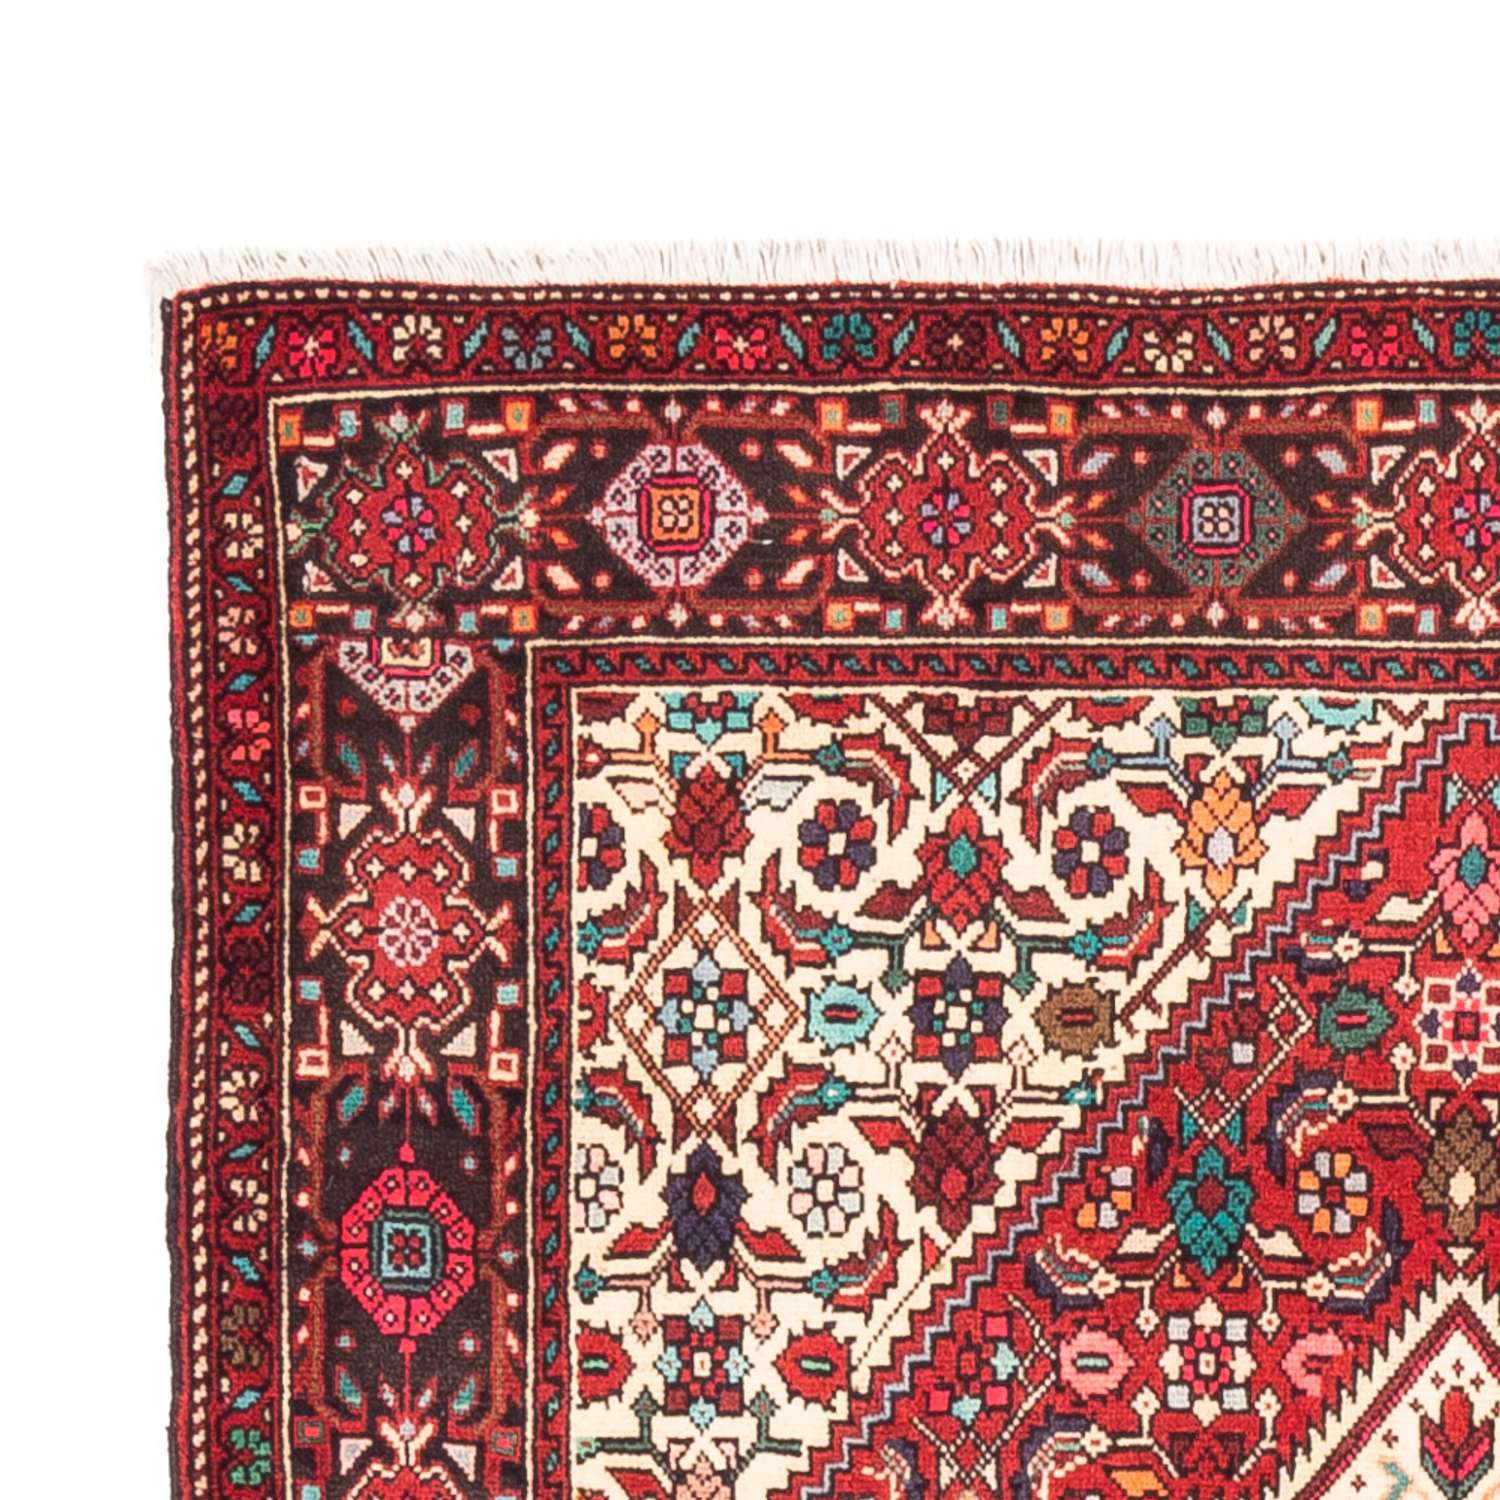 Tapis persan - Nomadic - 152 x 102 cm - rouge